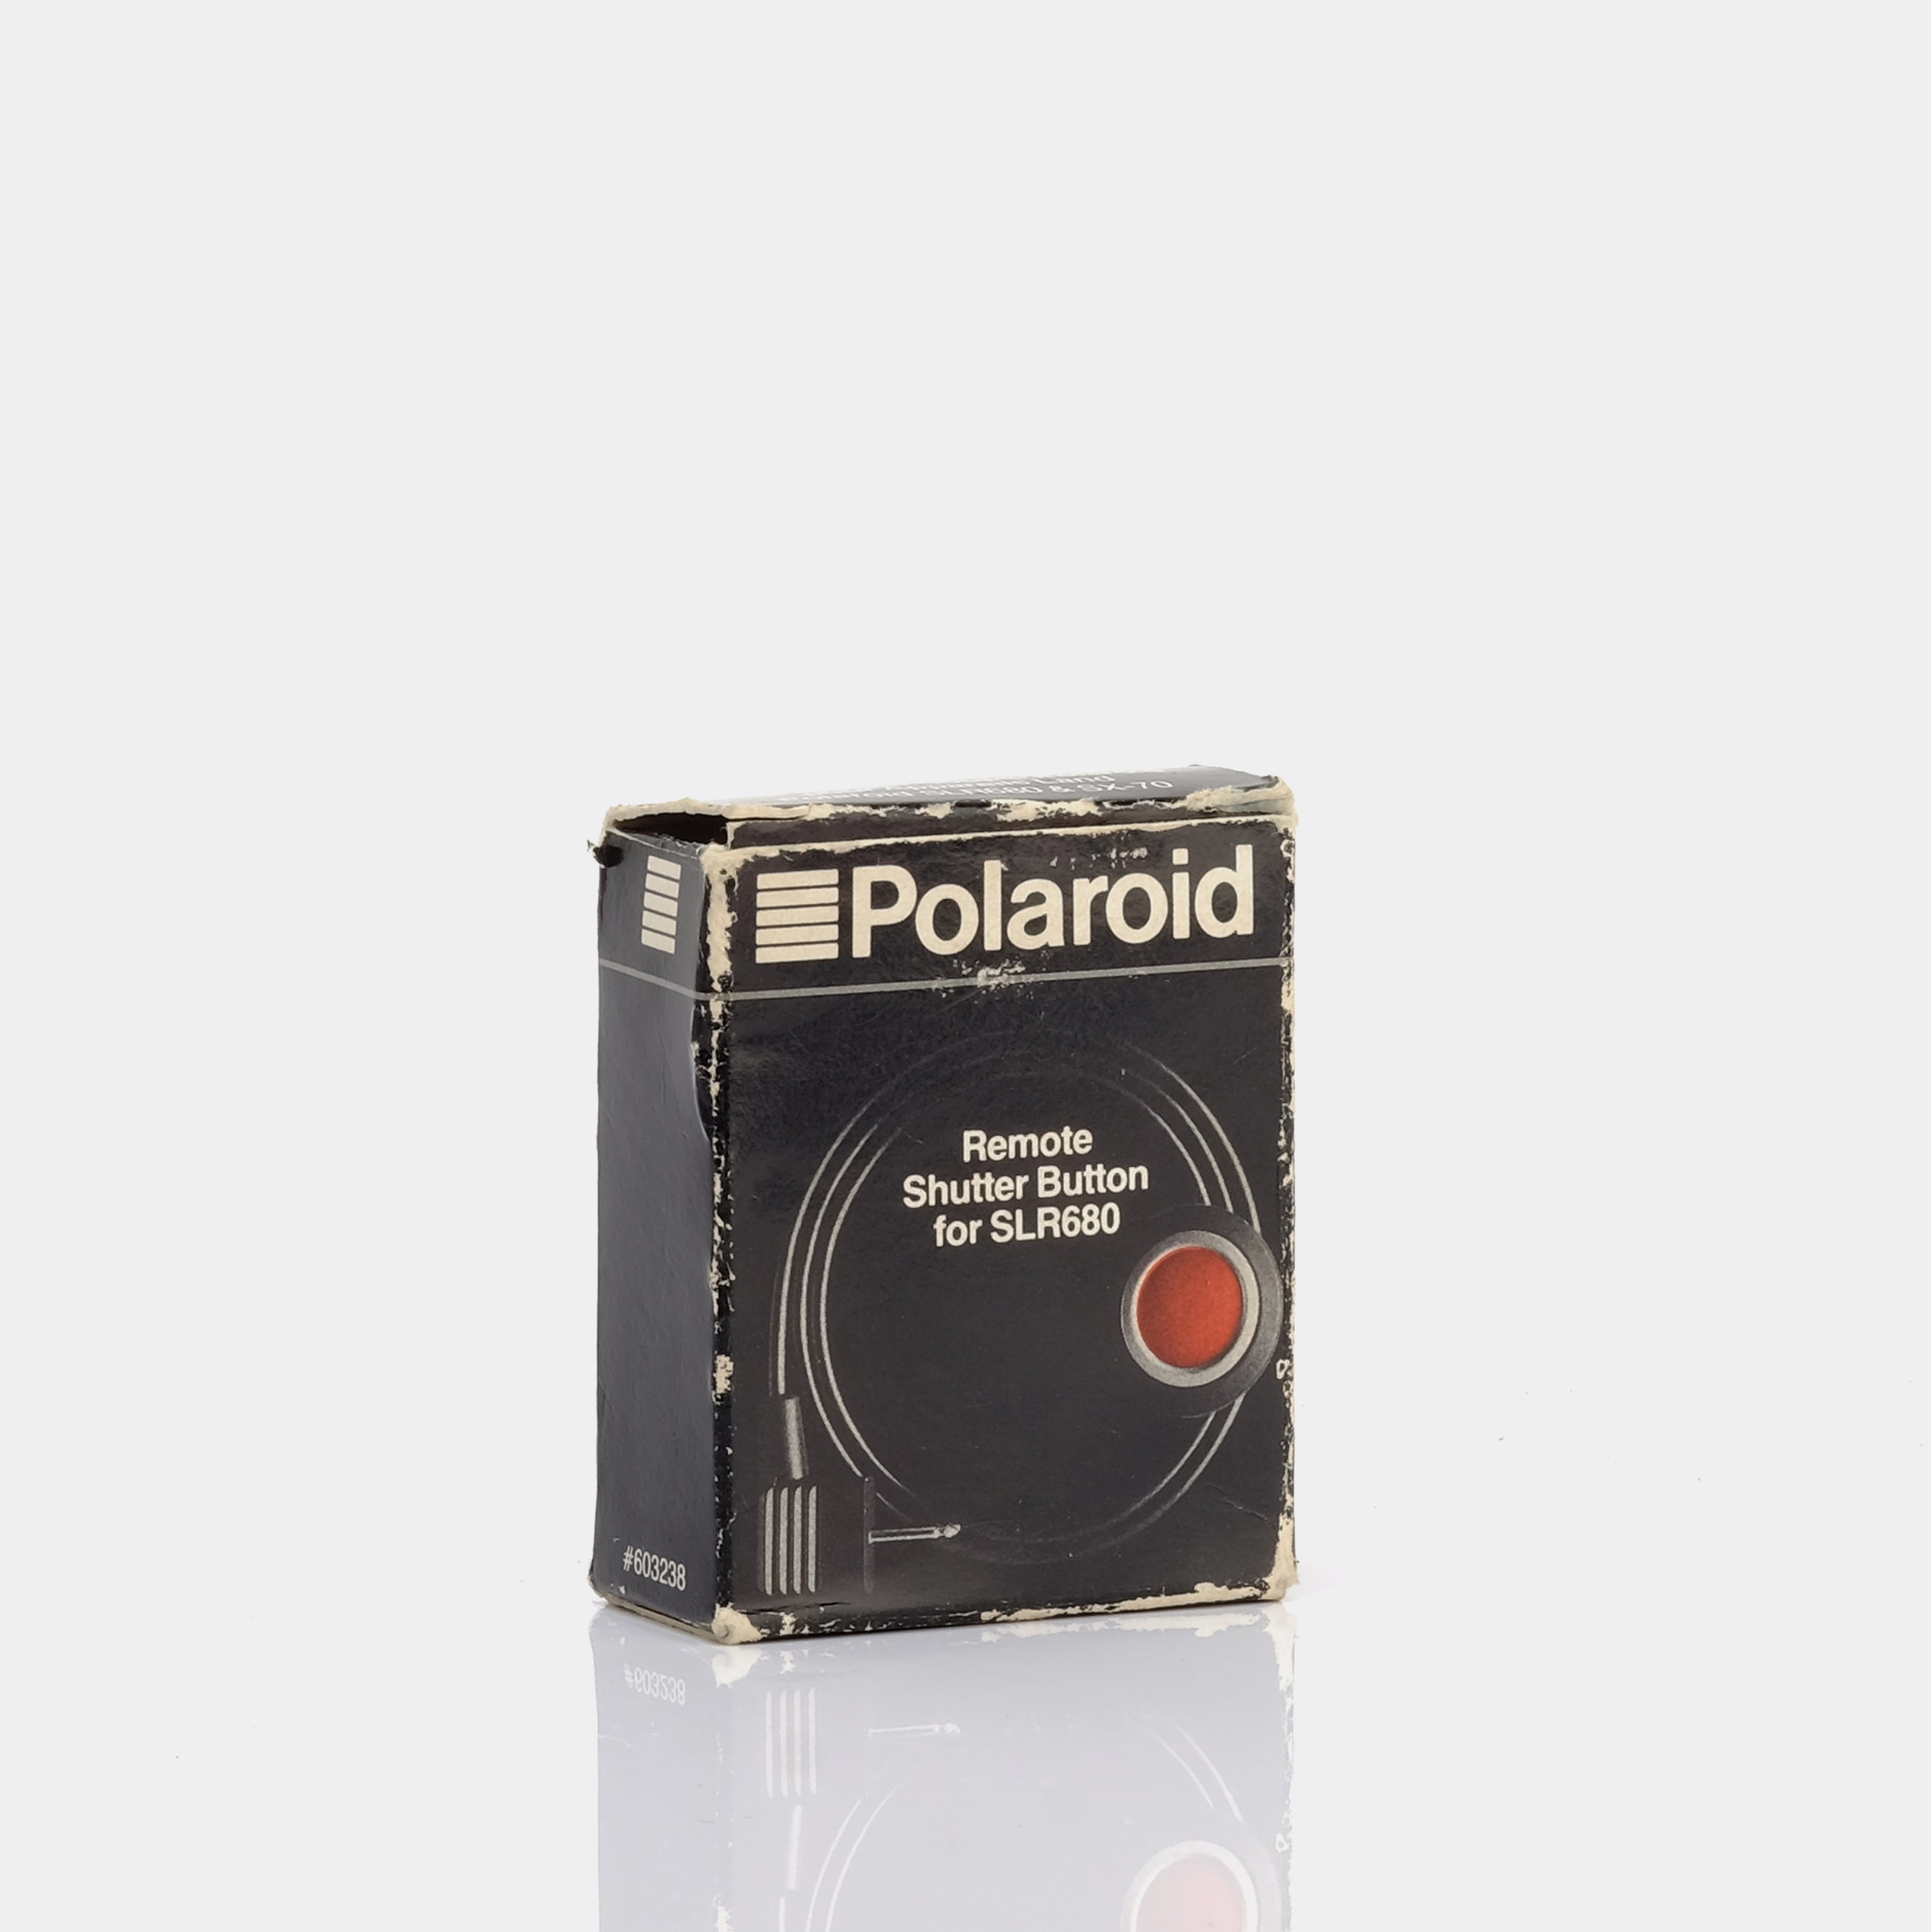 Polaroid Remote Shutter Button for SLR680